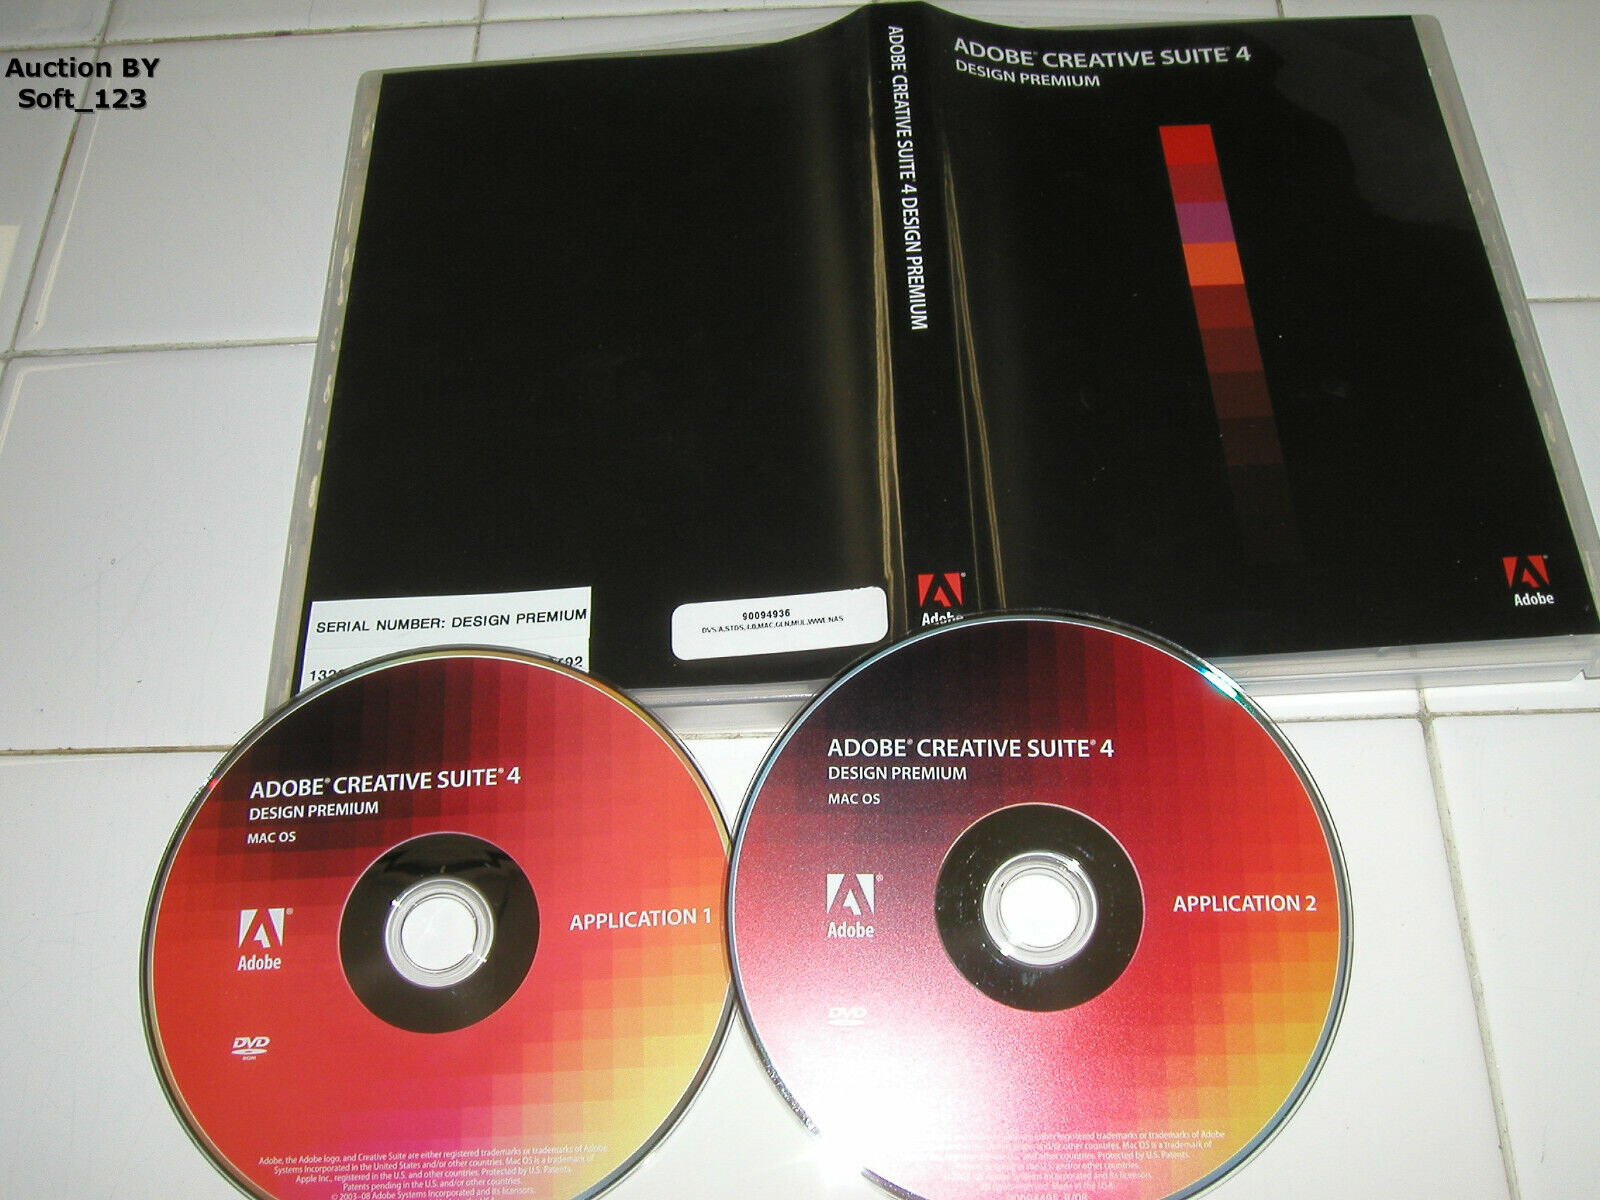 Adobe Creative Suite 4 CS4 Design Premium For MAC Full Retai DVD Version